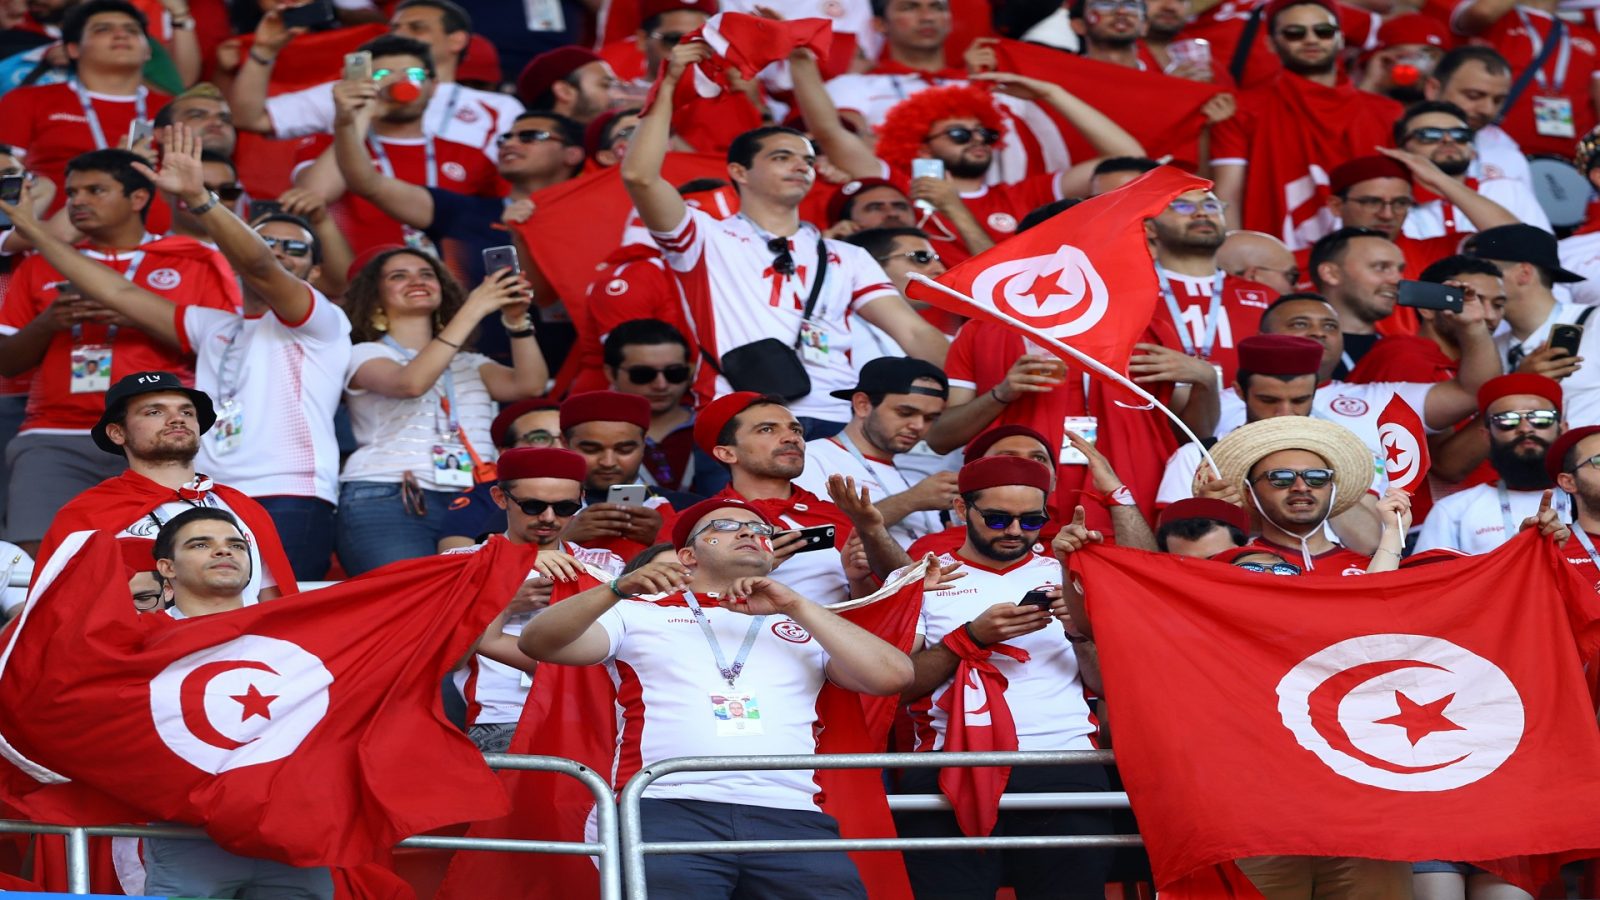 يهم جماهير المنتخب/ هذه البطاقة تعوّض الفيزا لمتابعة كأس العرب في قطر (فيديو)